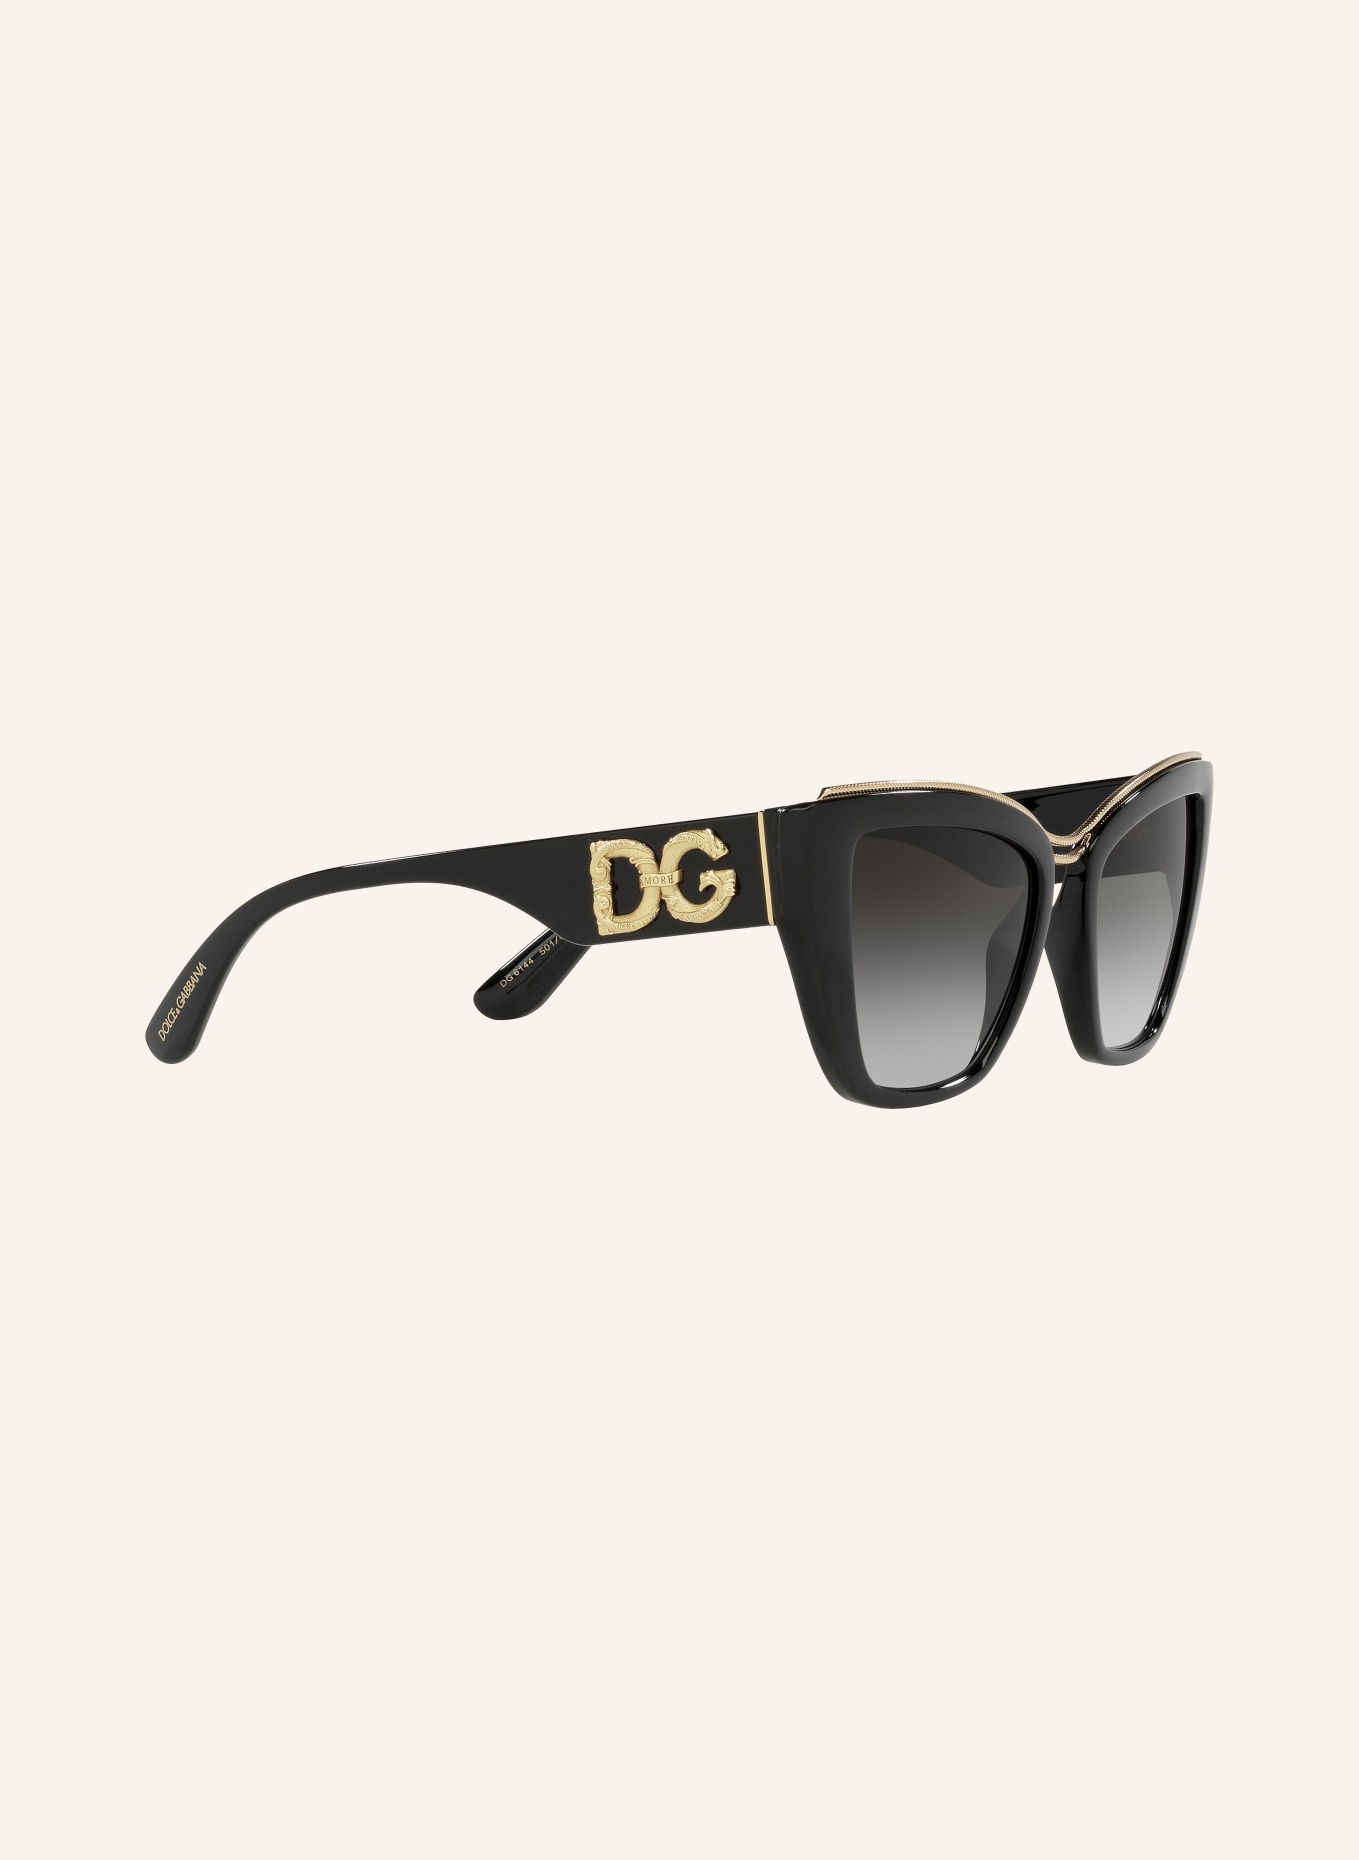 DOLCE & GABBANA Sunglasses DG6144, Color: 501/8G - BLACK/BLACK GRADIENT (Image 3)